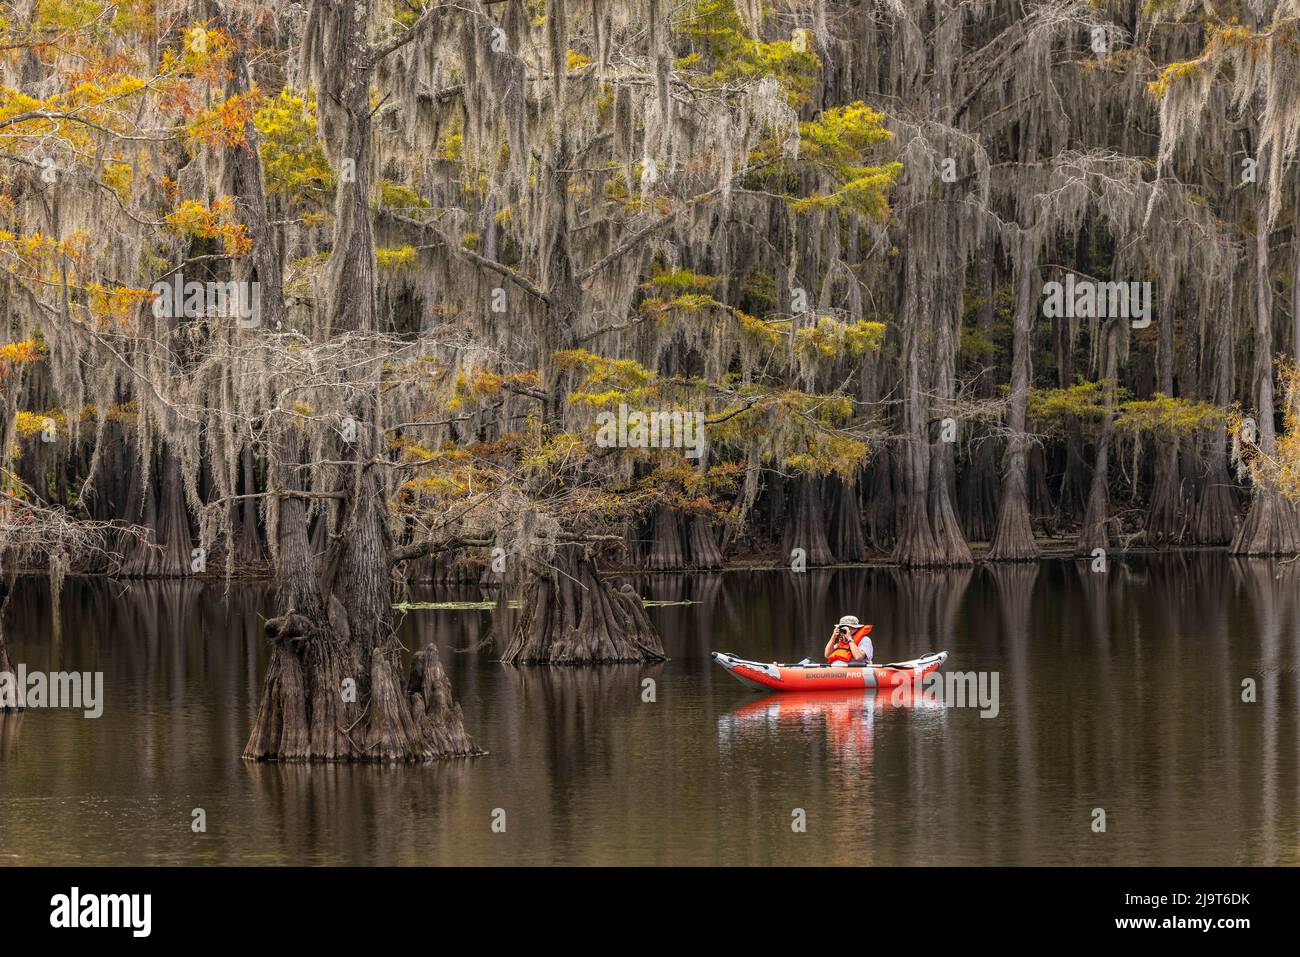 Albero di cipresso calvo drappeggiato in muschio spagnolo con colori autunnali e kayak tra gli alberi. Caddo Lake state Park, incerto, Texas Foto Stock